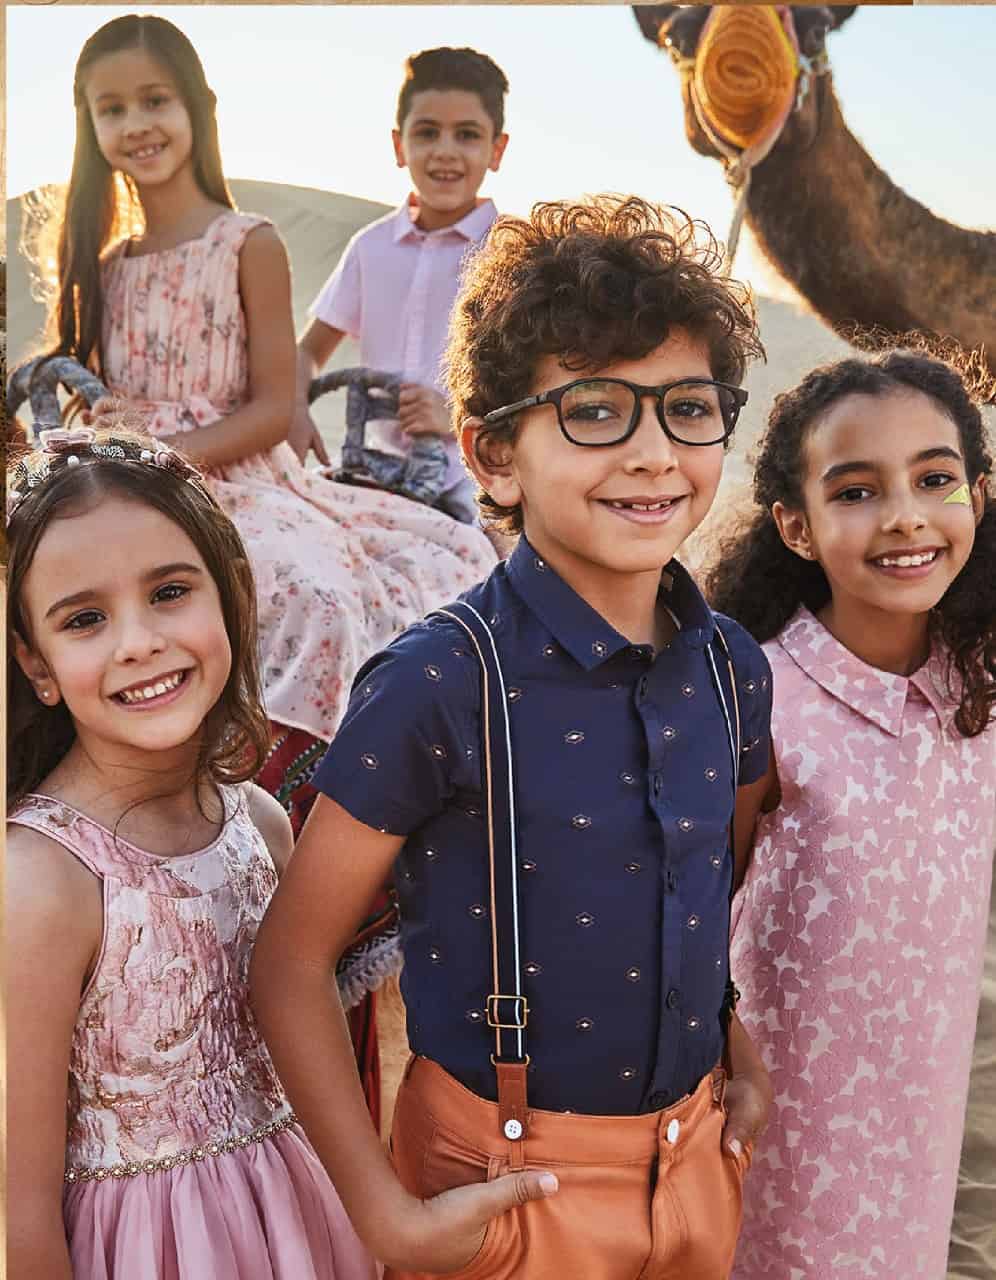 Children's Store iniedi kollezzjoni tal-moda tar-Ramadan b'toqob tradizzjonali kontemporanji